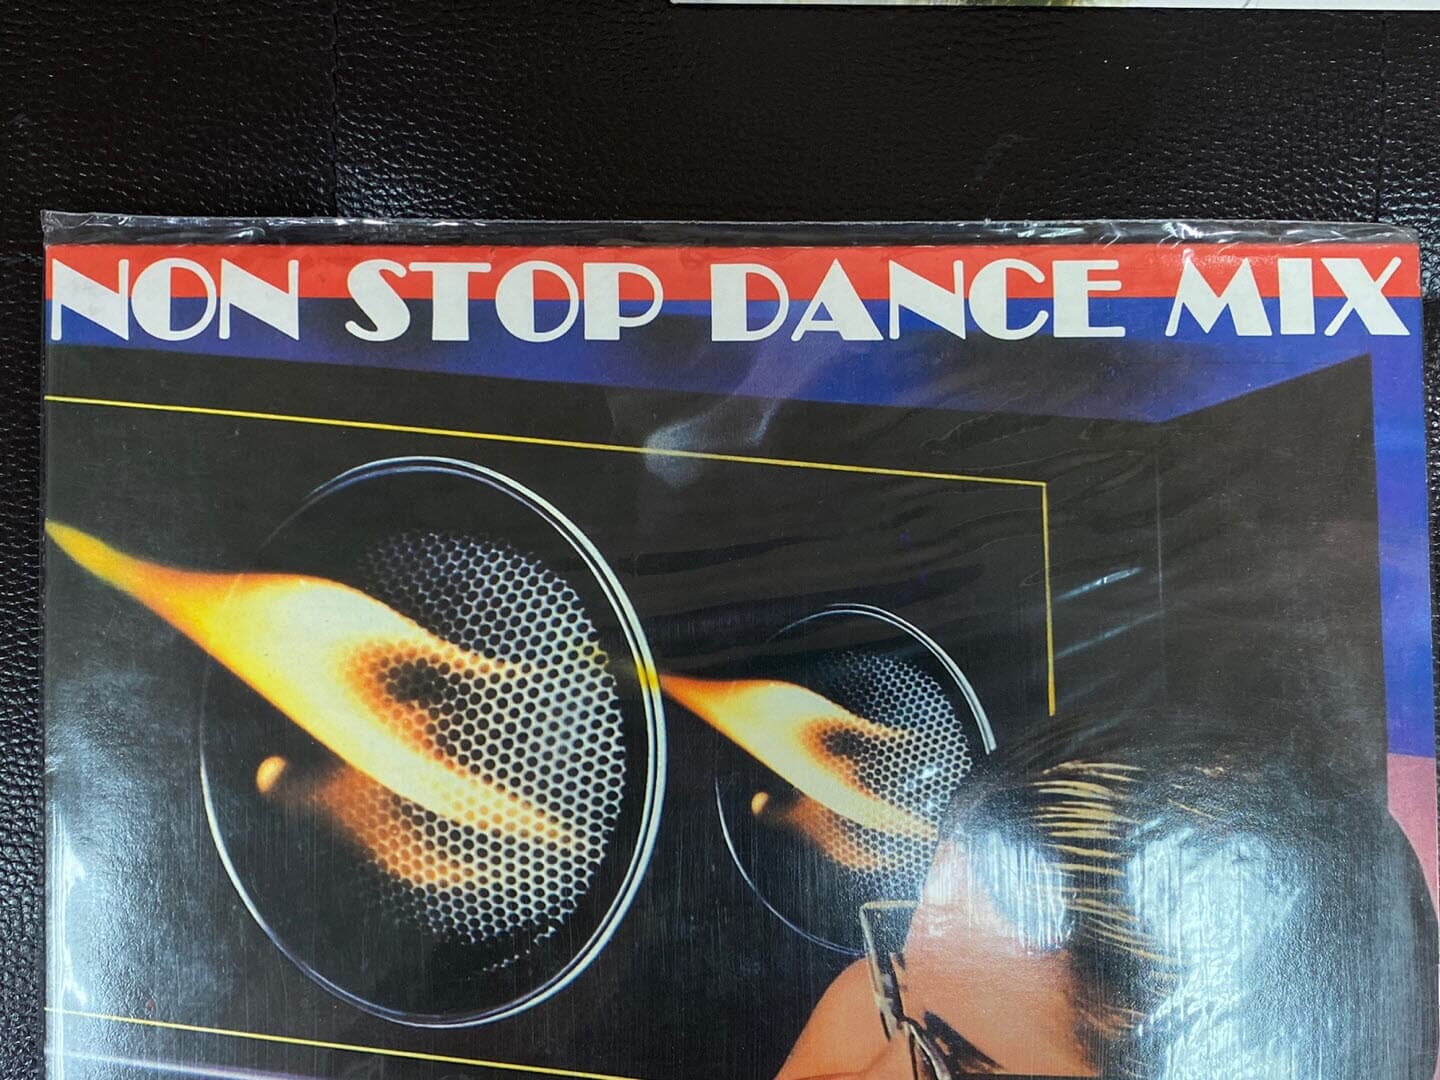 [LP] 논 스톱 댄스 믹스 - Non Stop Dance Mix LP [미개봉] [성음-라이센스반]